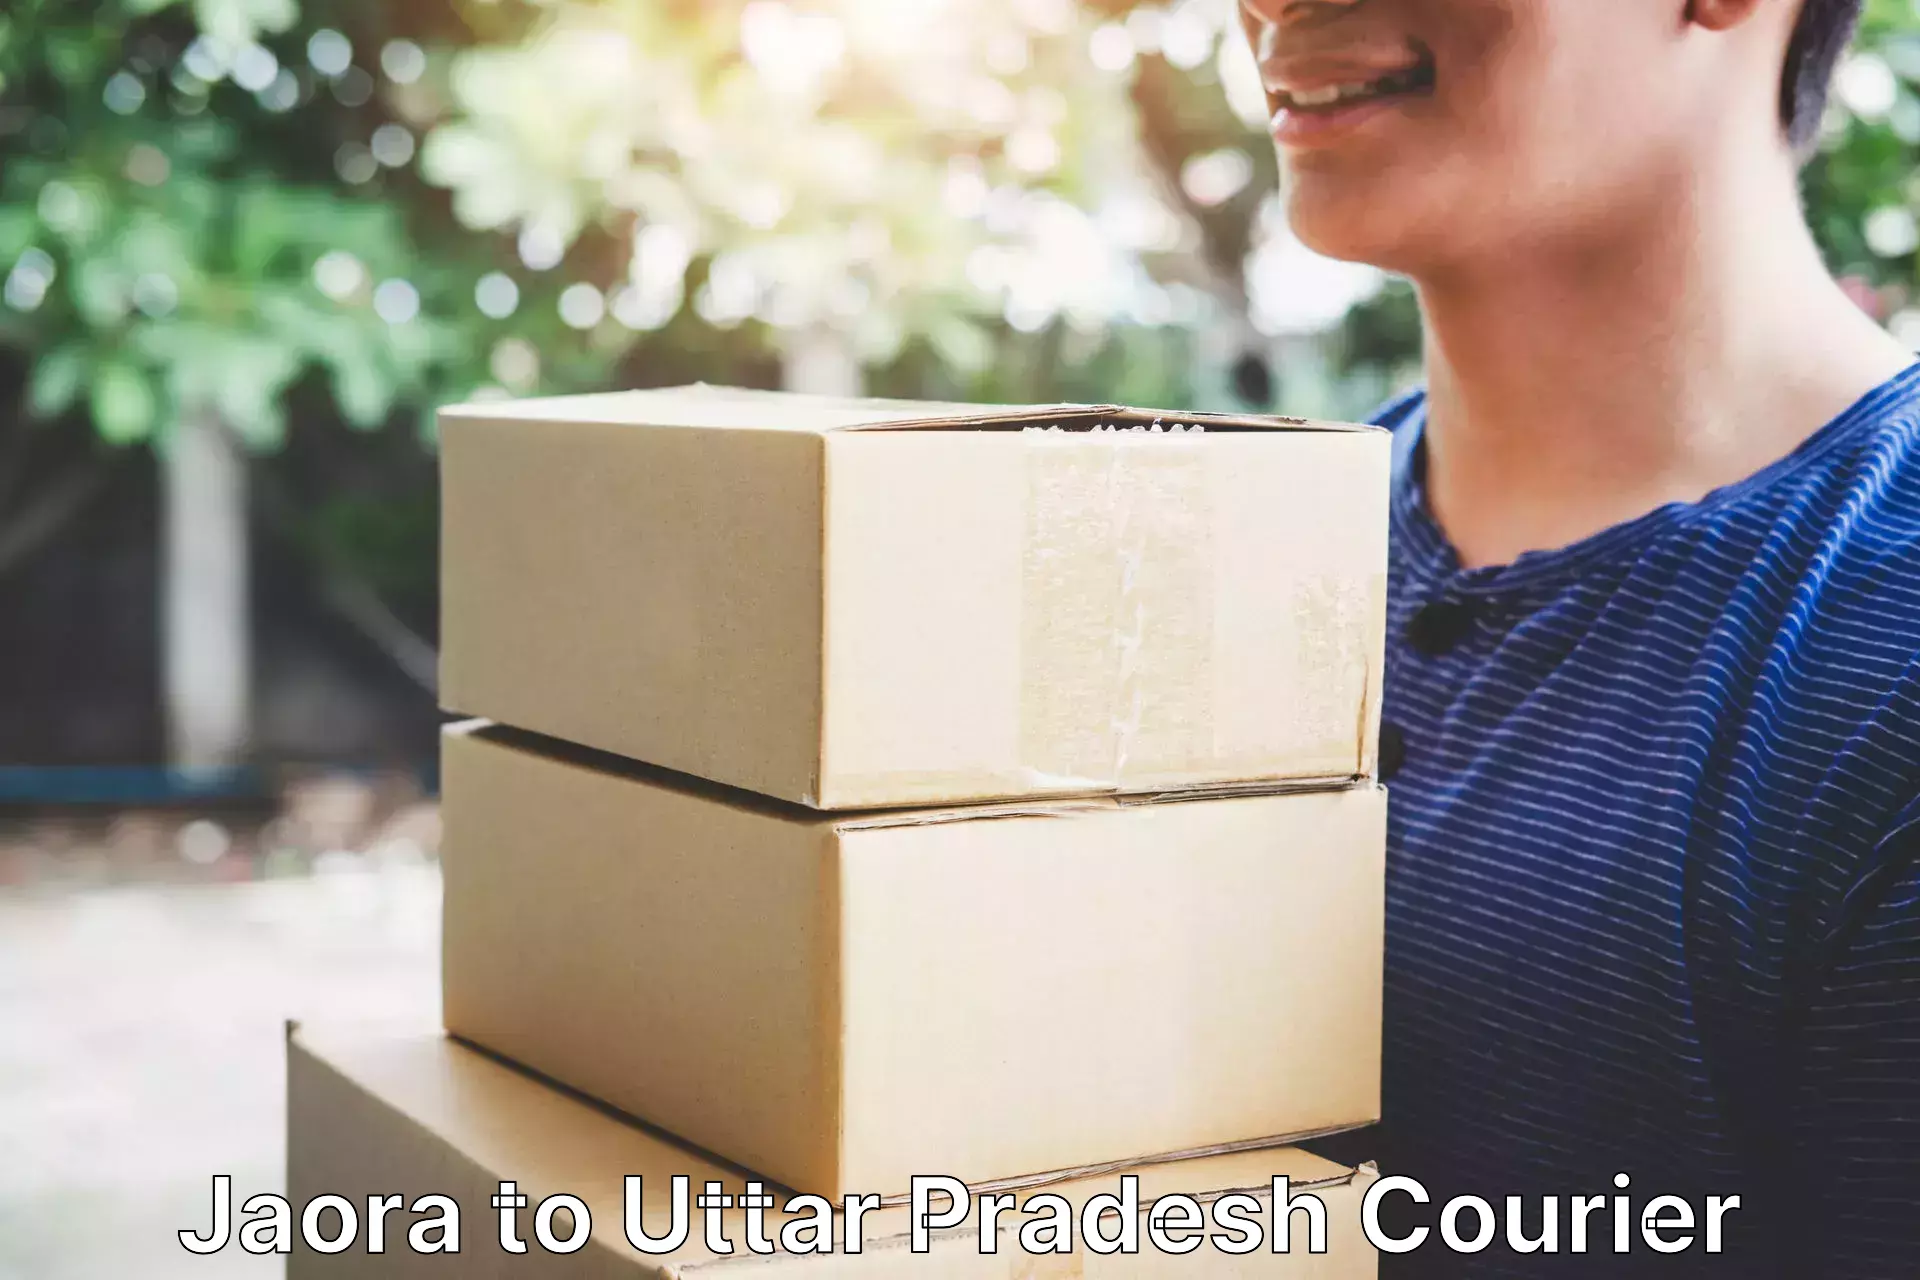 Easy return solutions Jaora to Uttar Pradesh